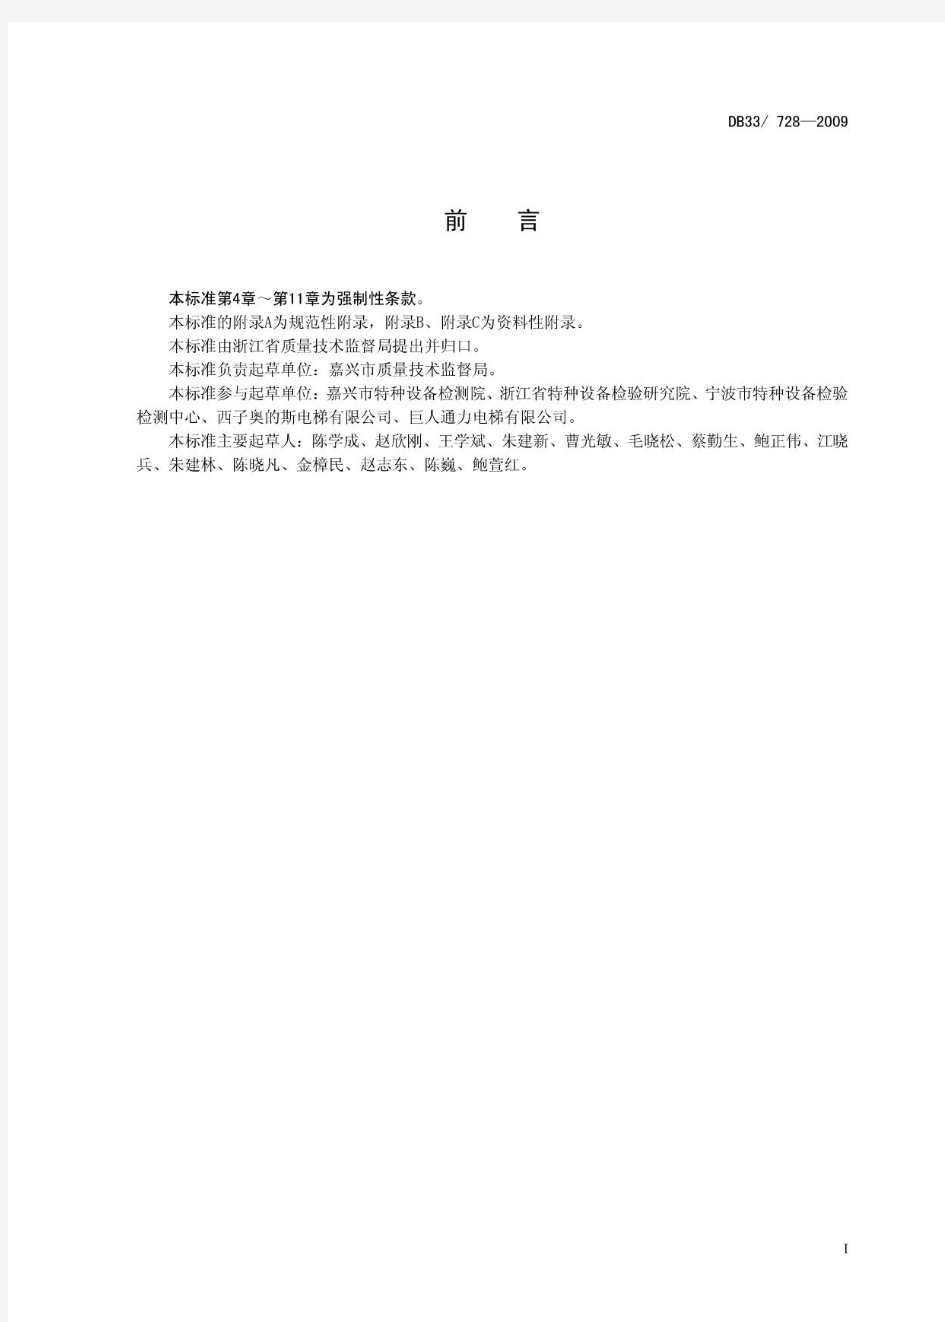 浙江省地方标准-电梯维修保养安全管理规范